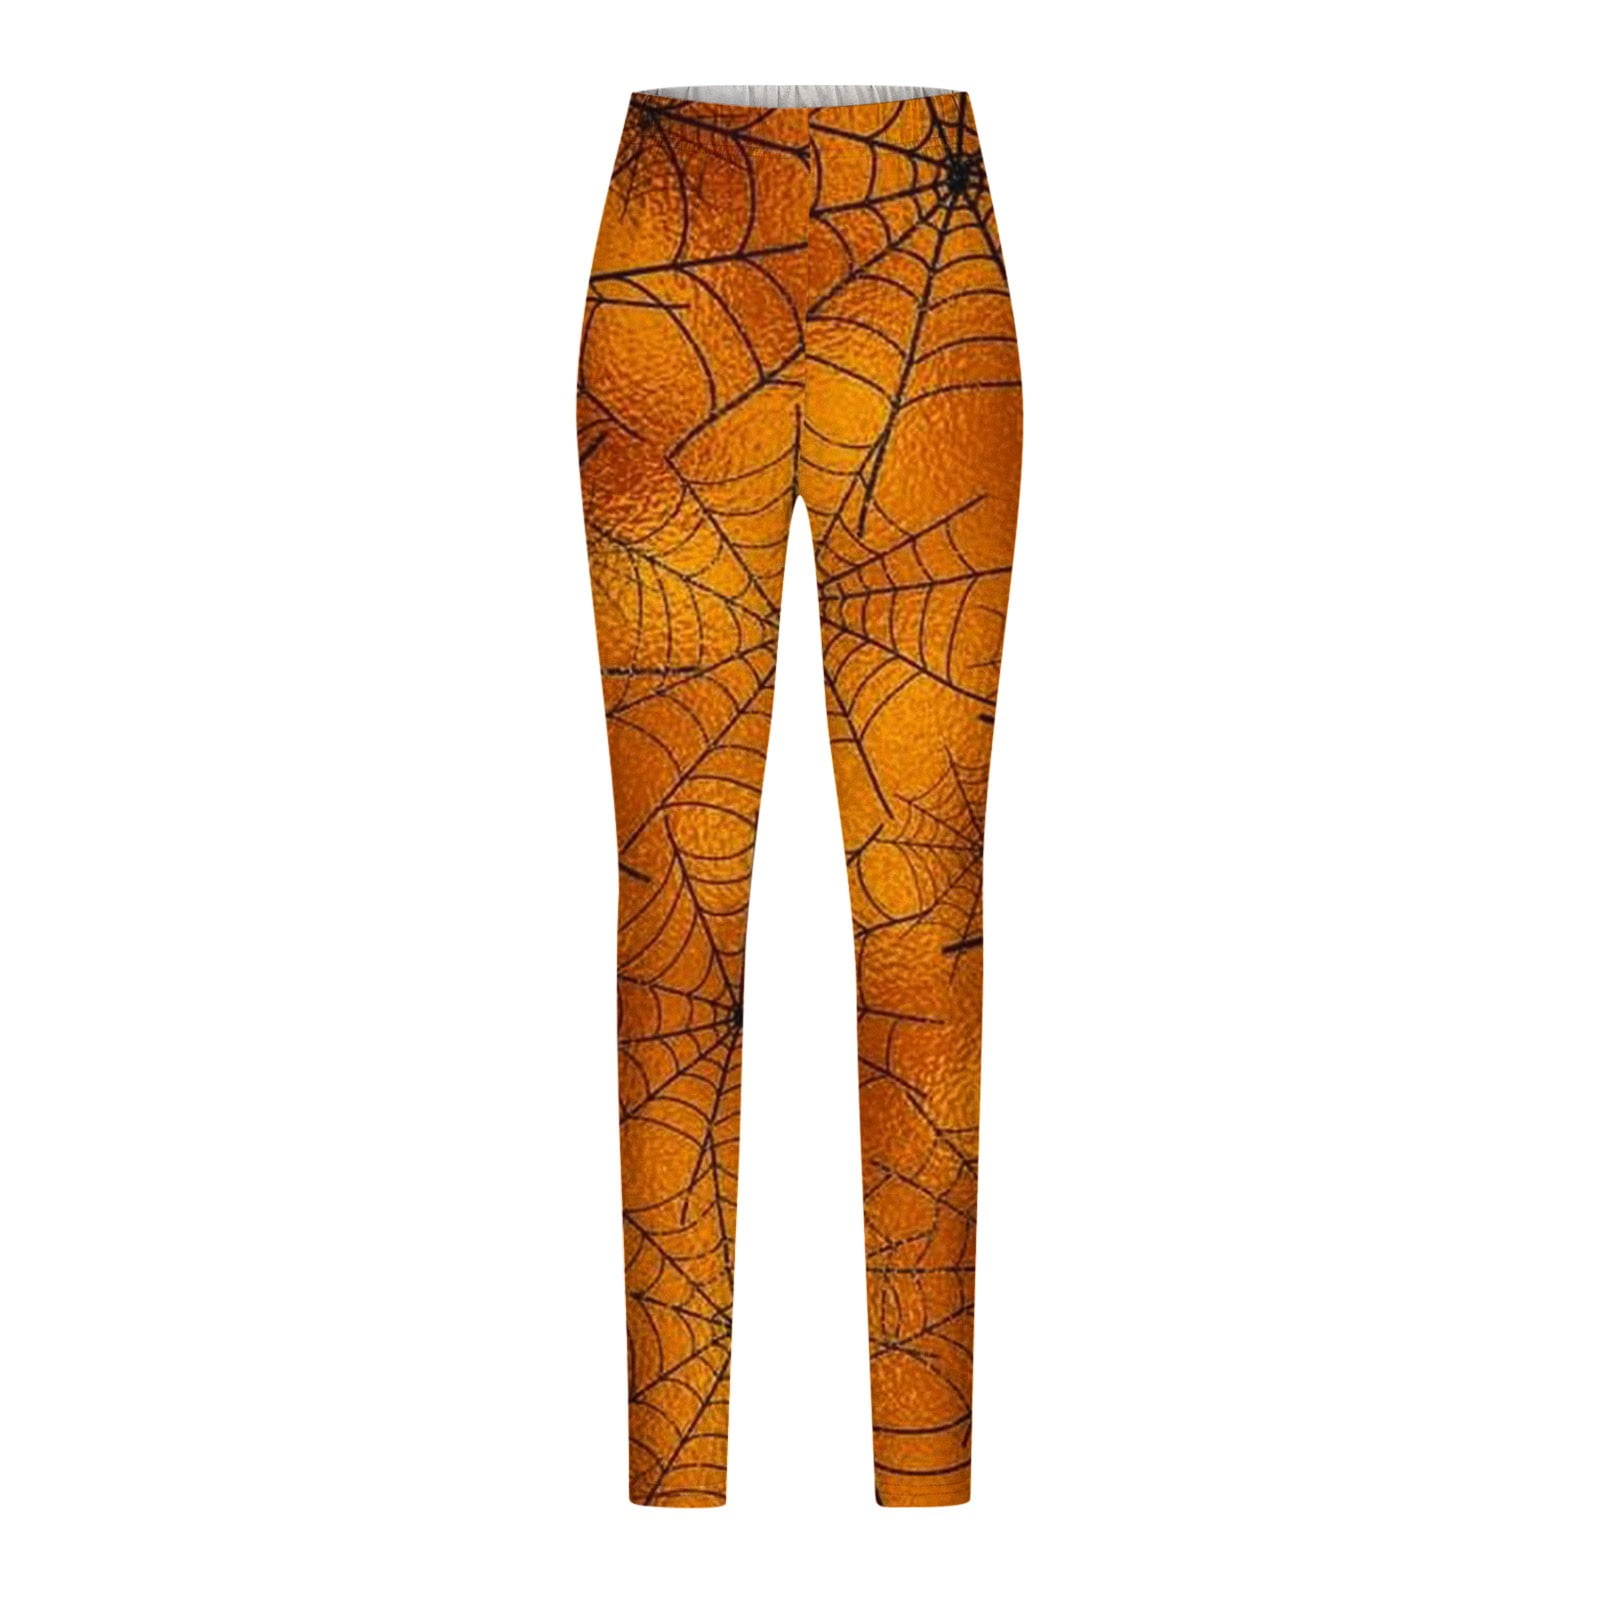 Fjallraven leggings Abisko Tights women's orange color | buy on PRM